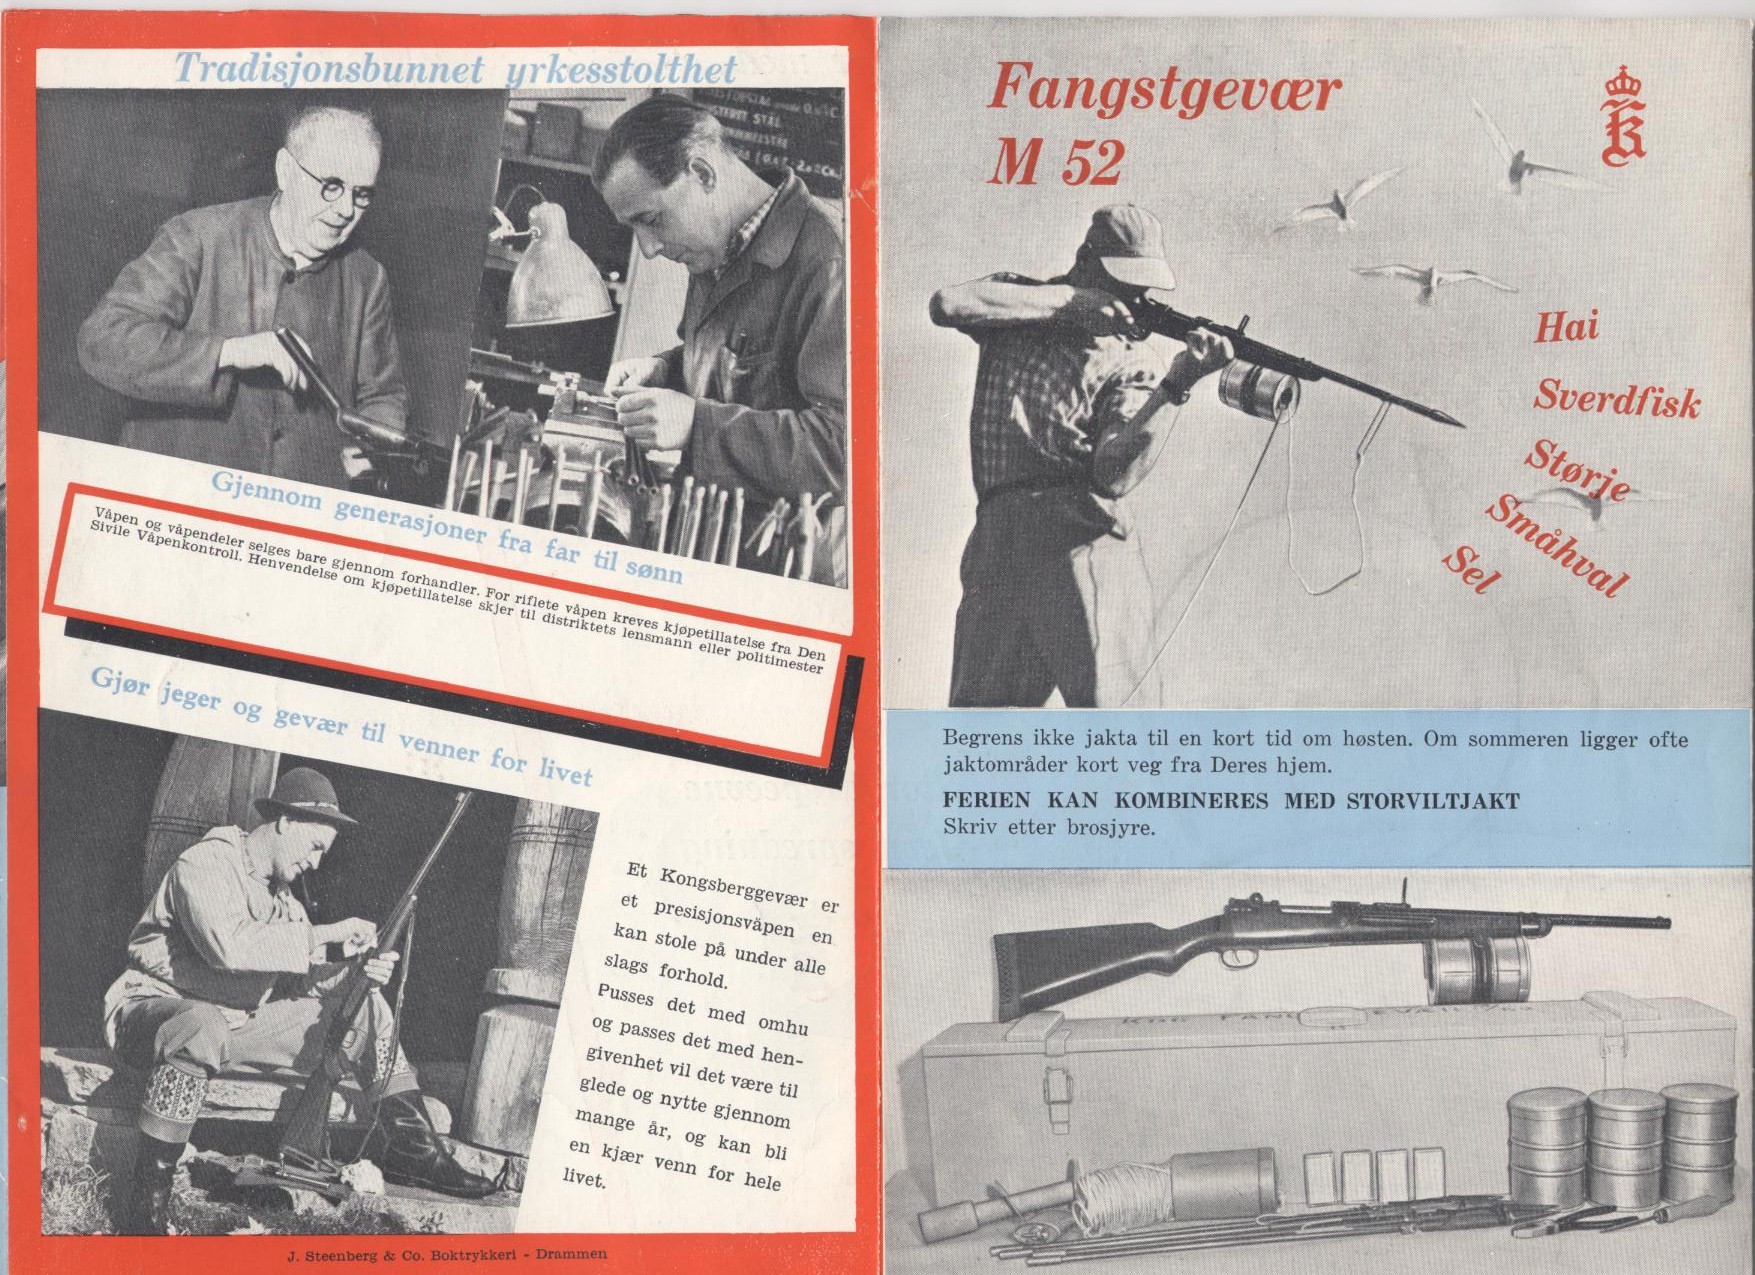 ./guns/fangst/bilder/Fangst-Kongsberg-M52-5.jpg